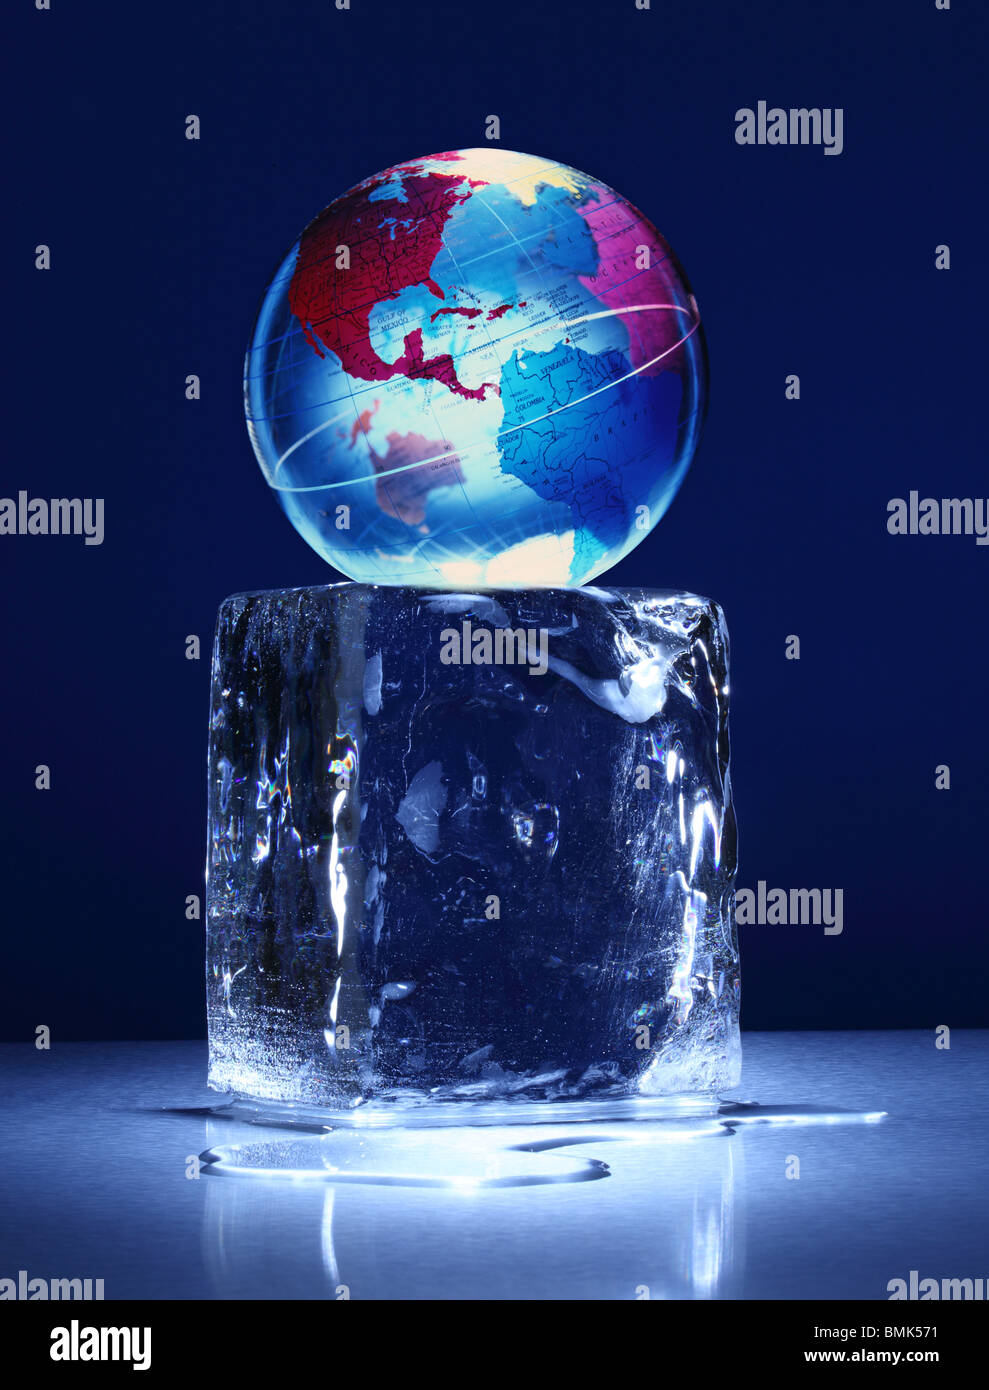 Einen gefrorenen Block des Eises mit einer Weltkugel auf einer Metalloberfläche Stockfoto